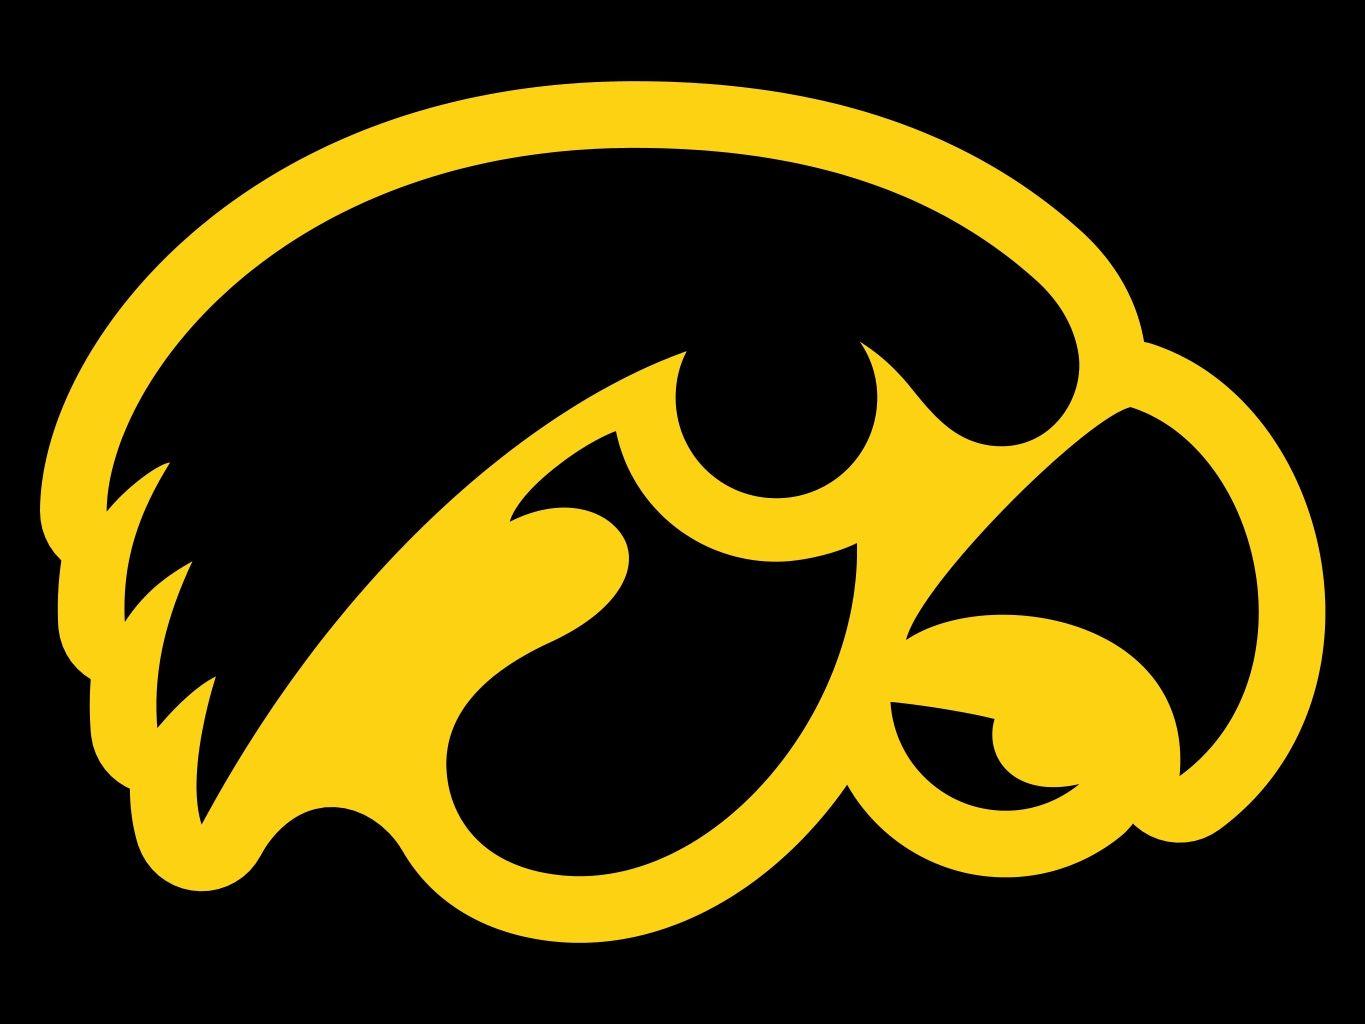 Black and Yellow Bird Logo - Gold Bird College Logo - Clipart & Vector Design •